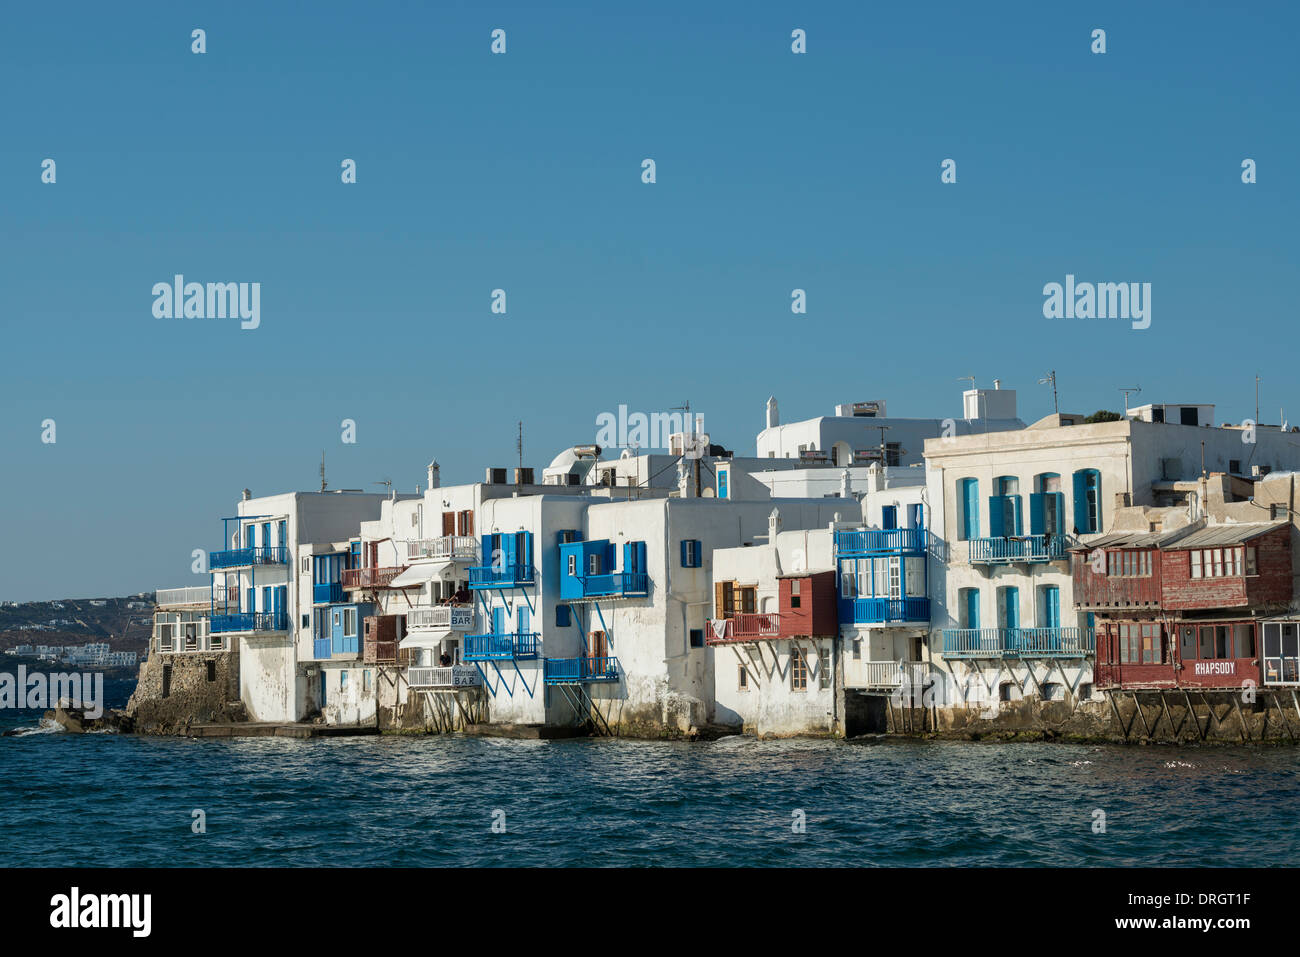 La petite Venise à Chora, la ville de Mykonos, Grèce Banque D'Images